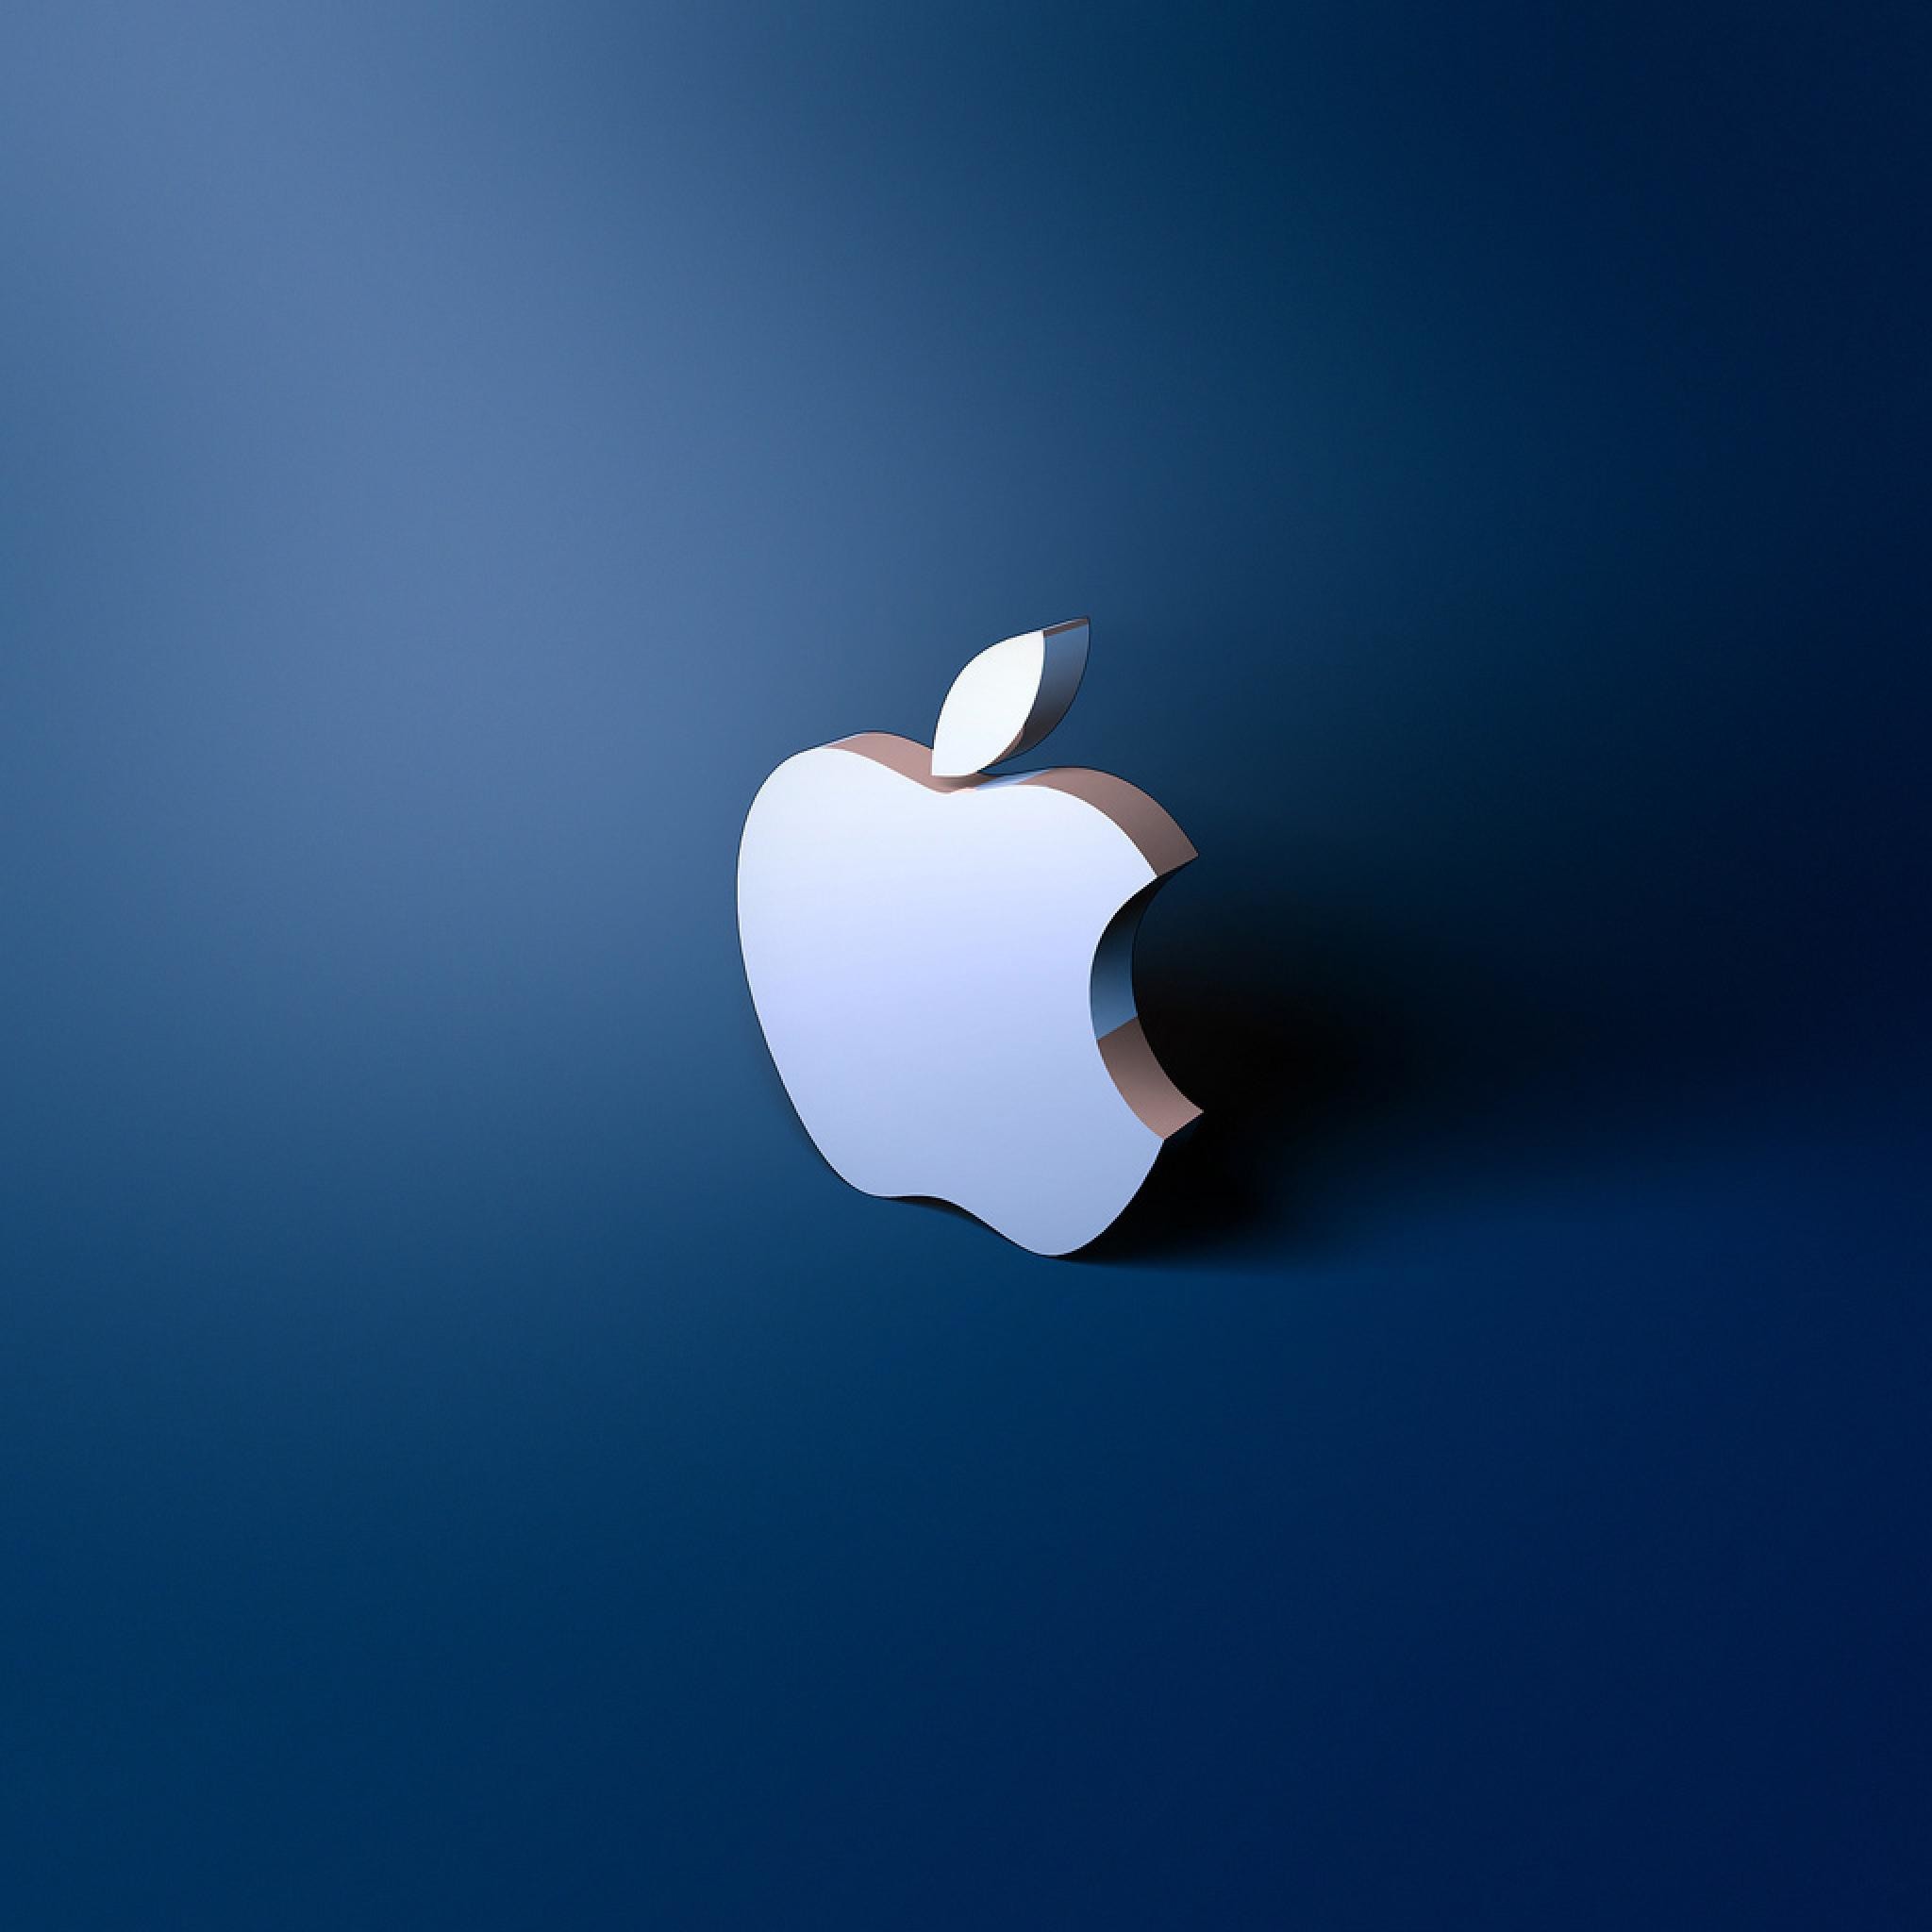 2048x2048 Light Blue Apple Logo.png - Bing images